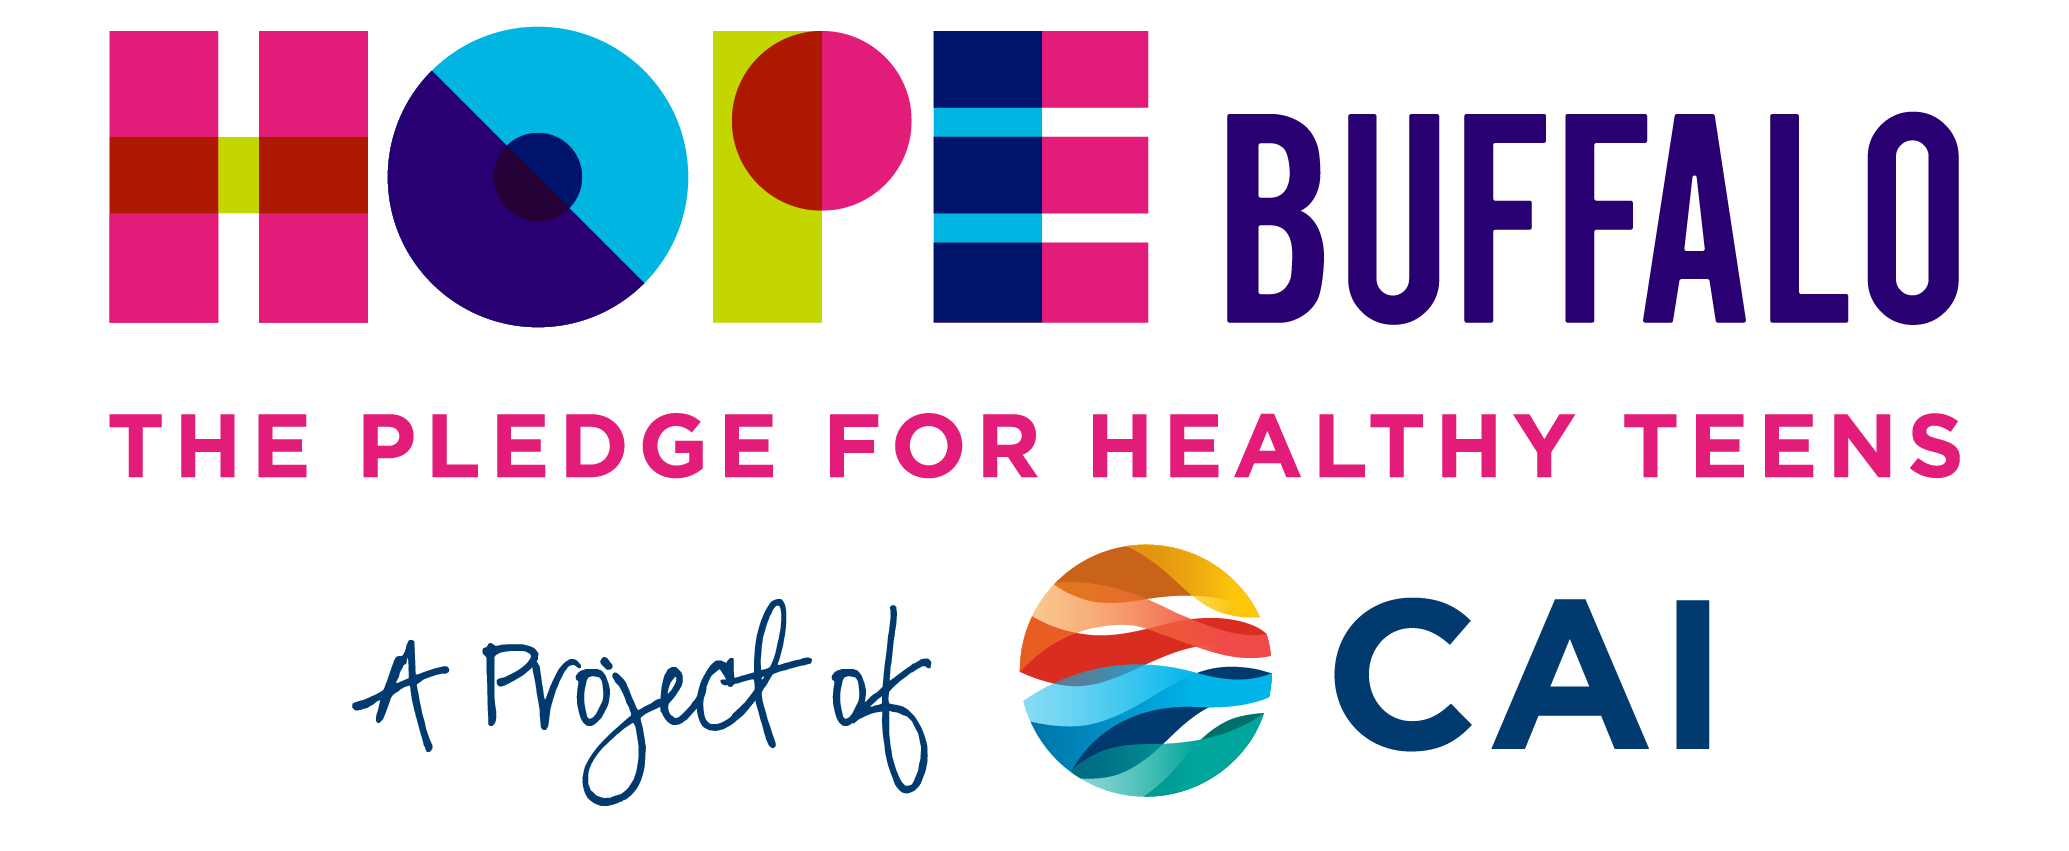 Hope Buffalo logo